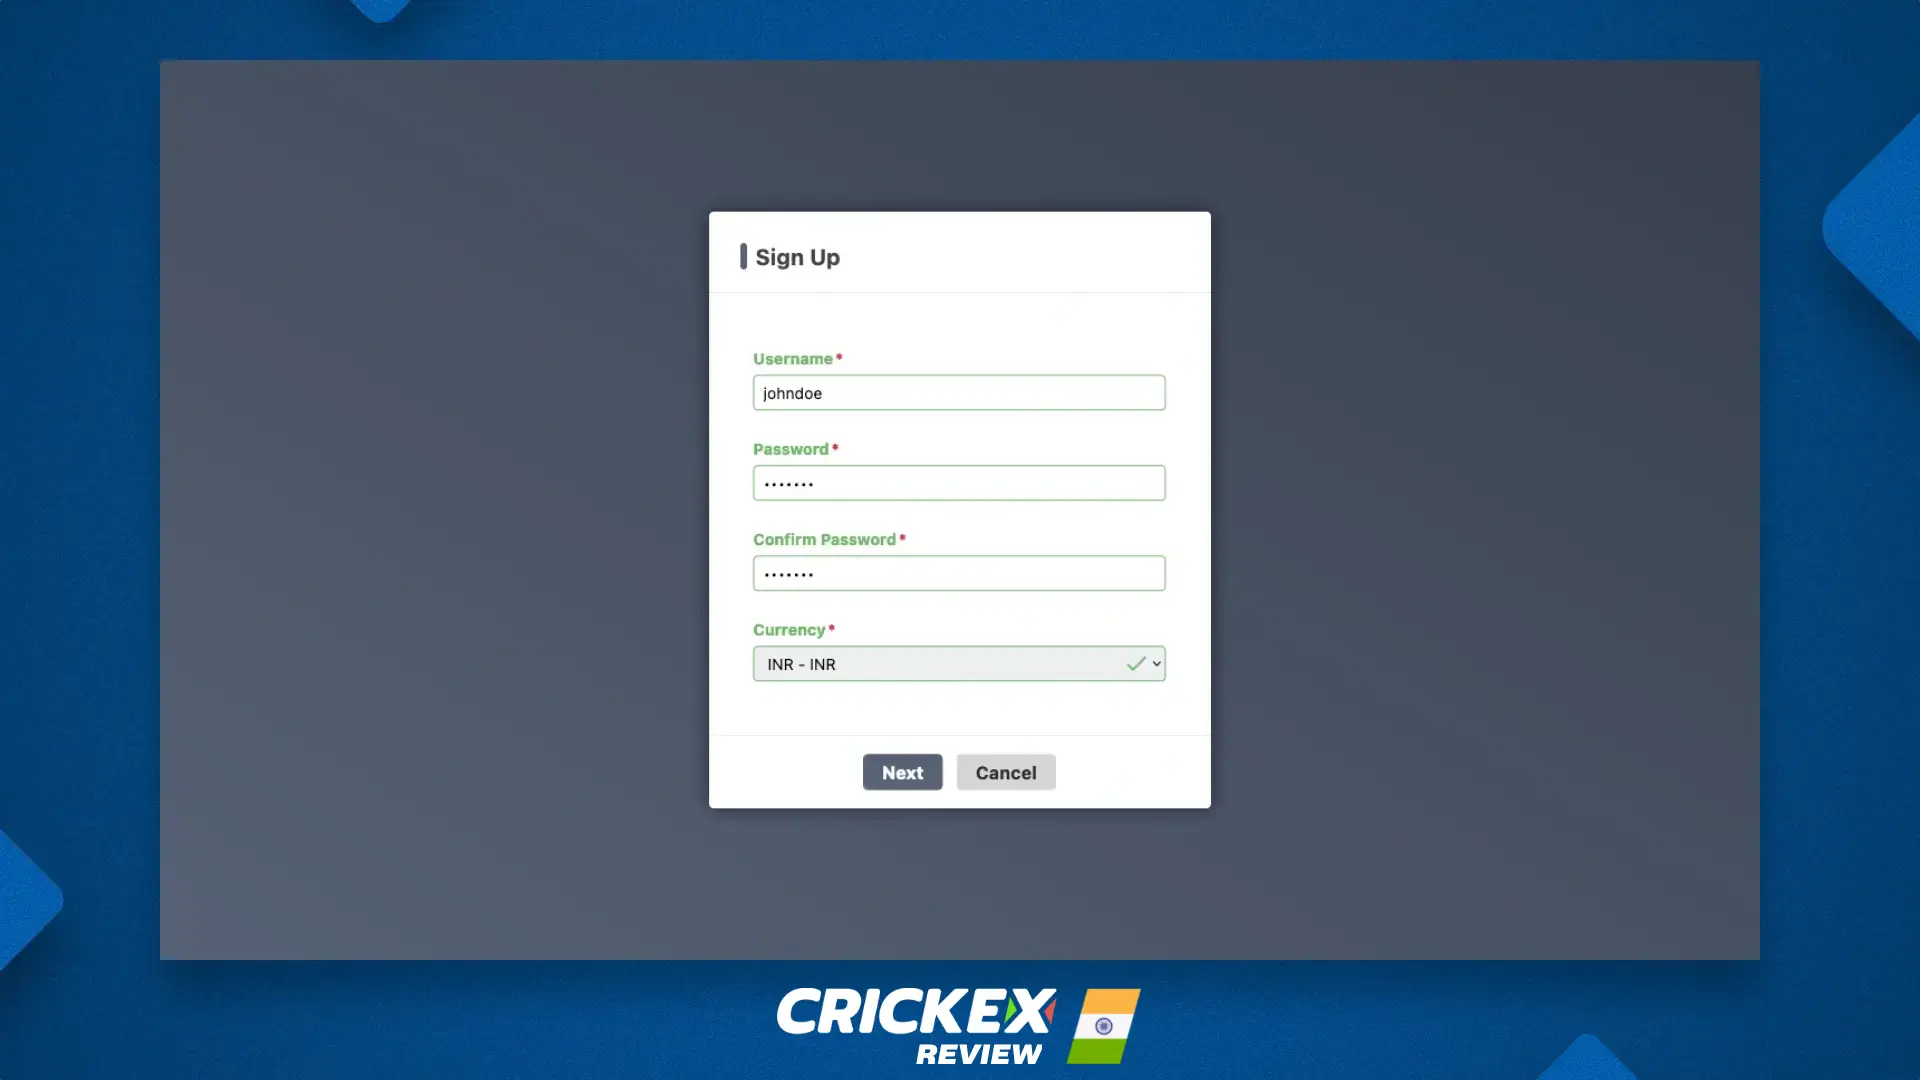 भारत और बांग्लादेश के उपयोगकर्ताओं के लिए Crickex संबद्ध कार्यक्रम में पंजीकरण